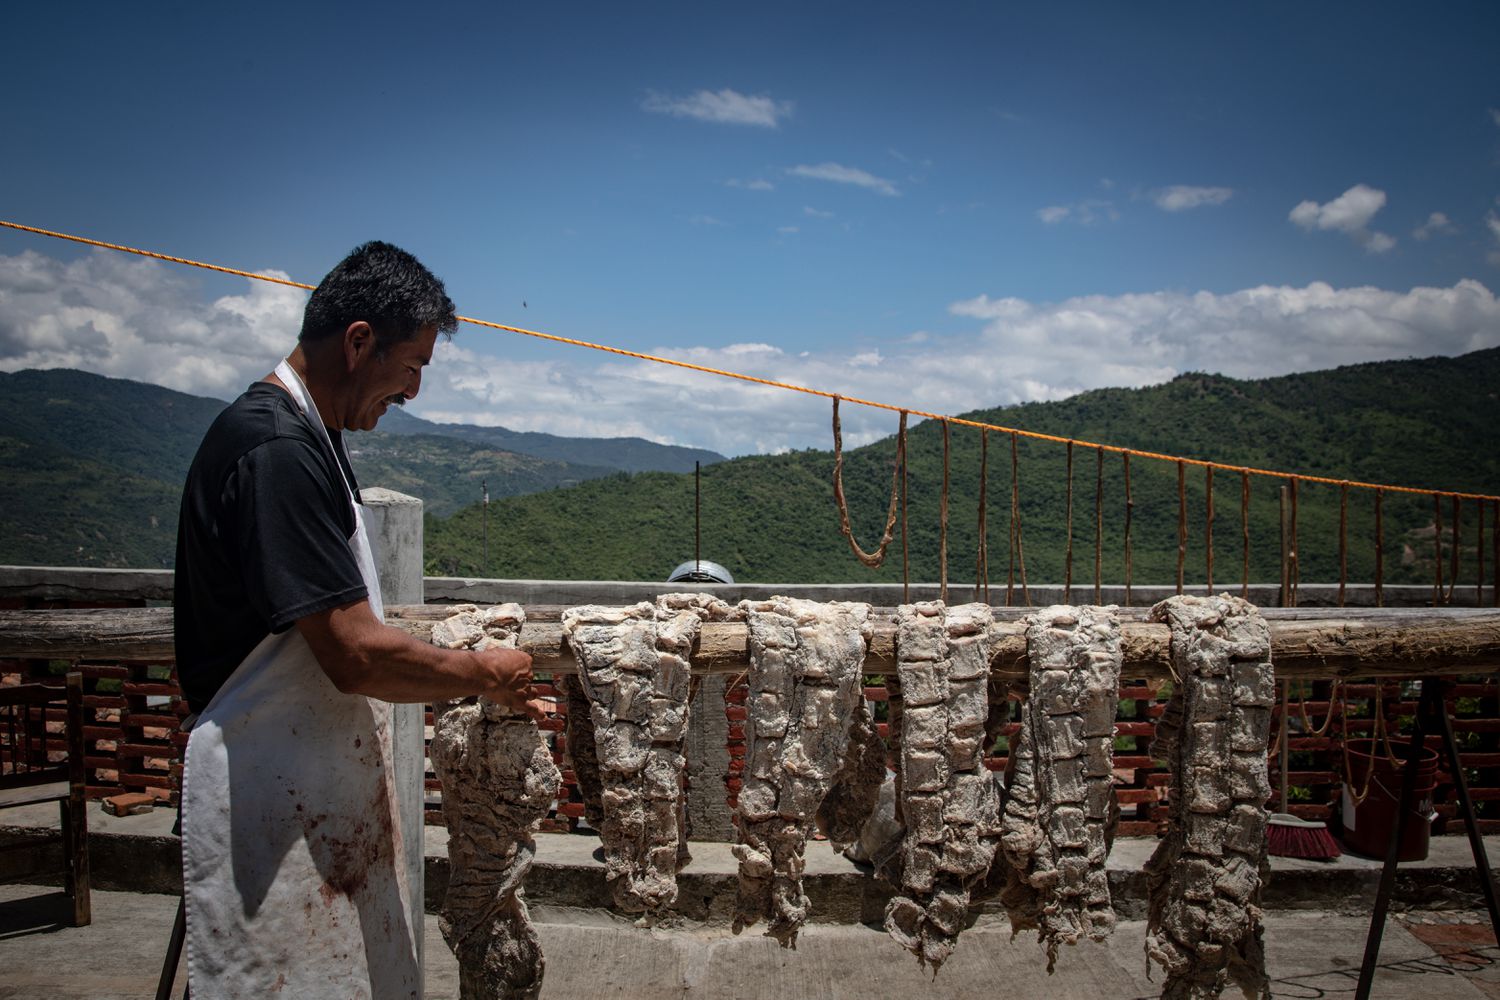 Prohibir las patatas fritas: una decisión identitaria en las montañas del sur de México